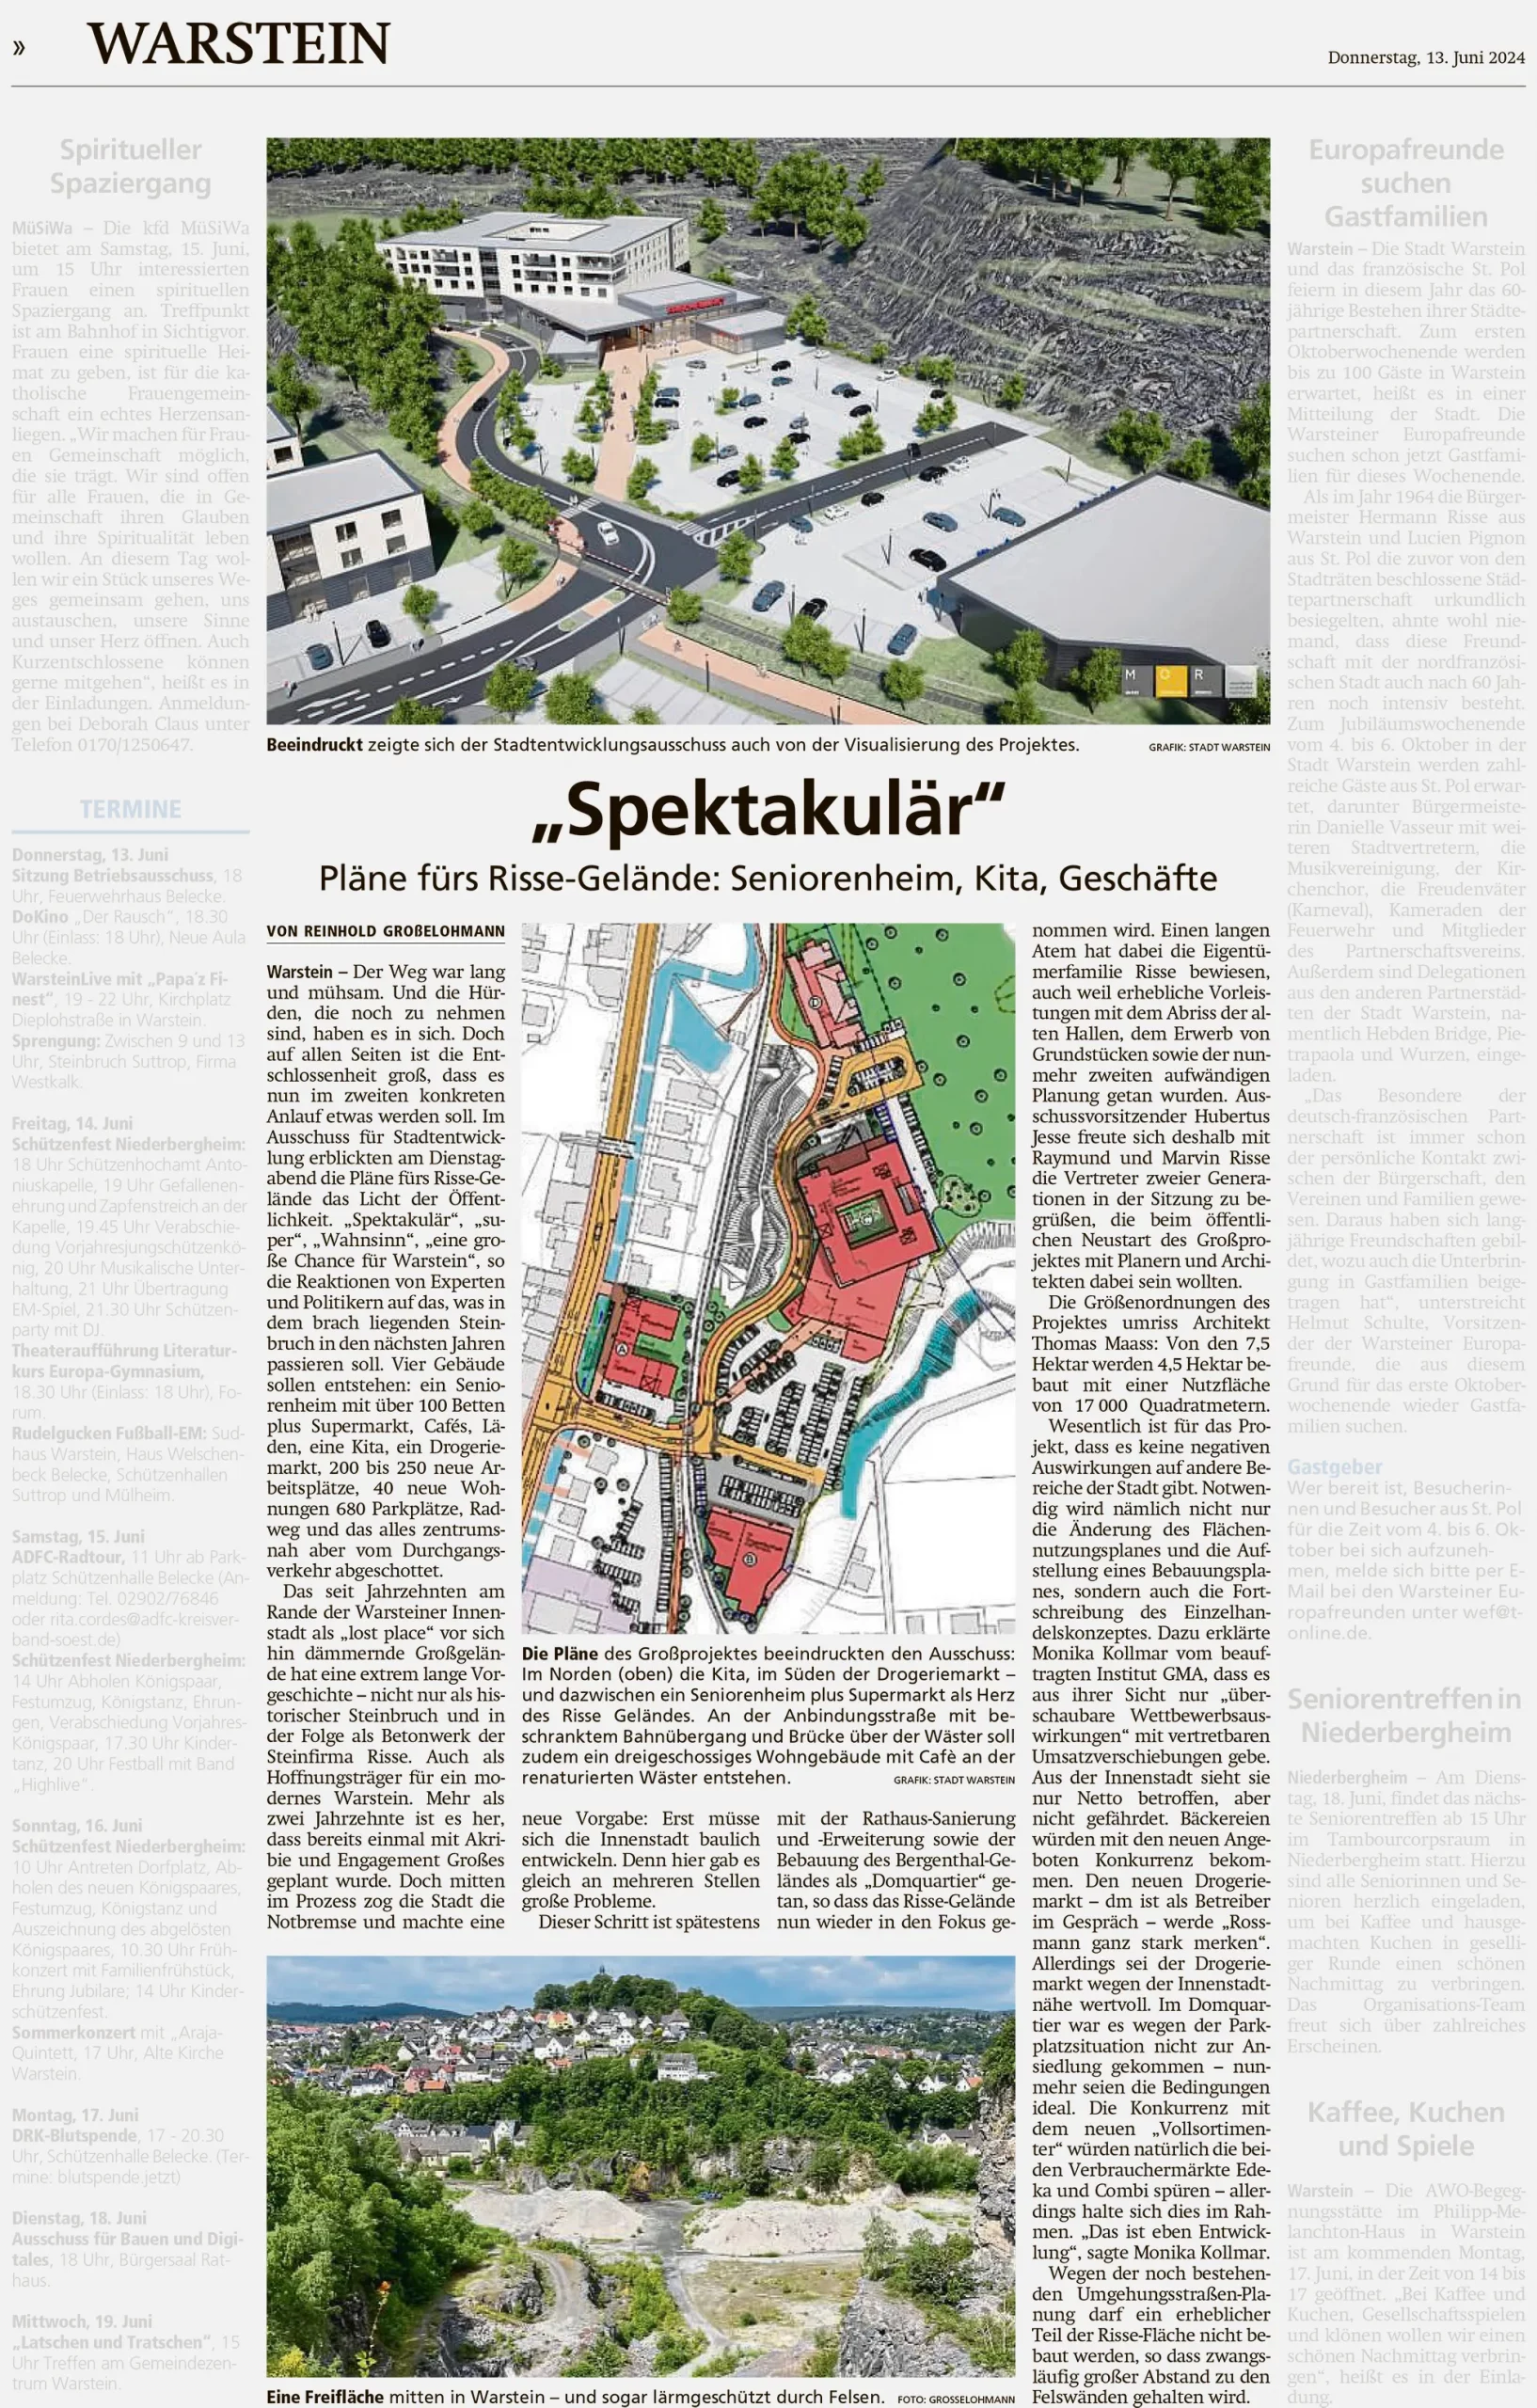 „Quartiersentwicklung Risse-Areal“ in Warstein